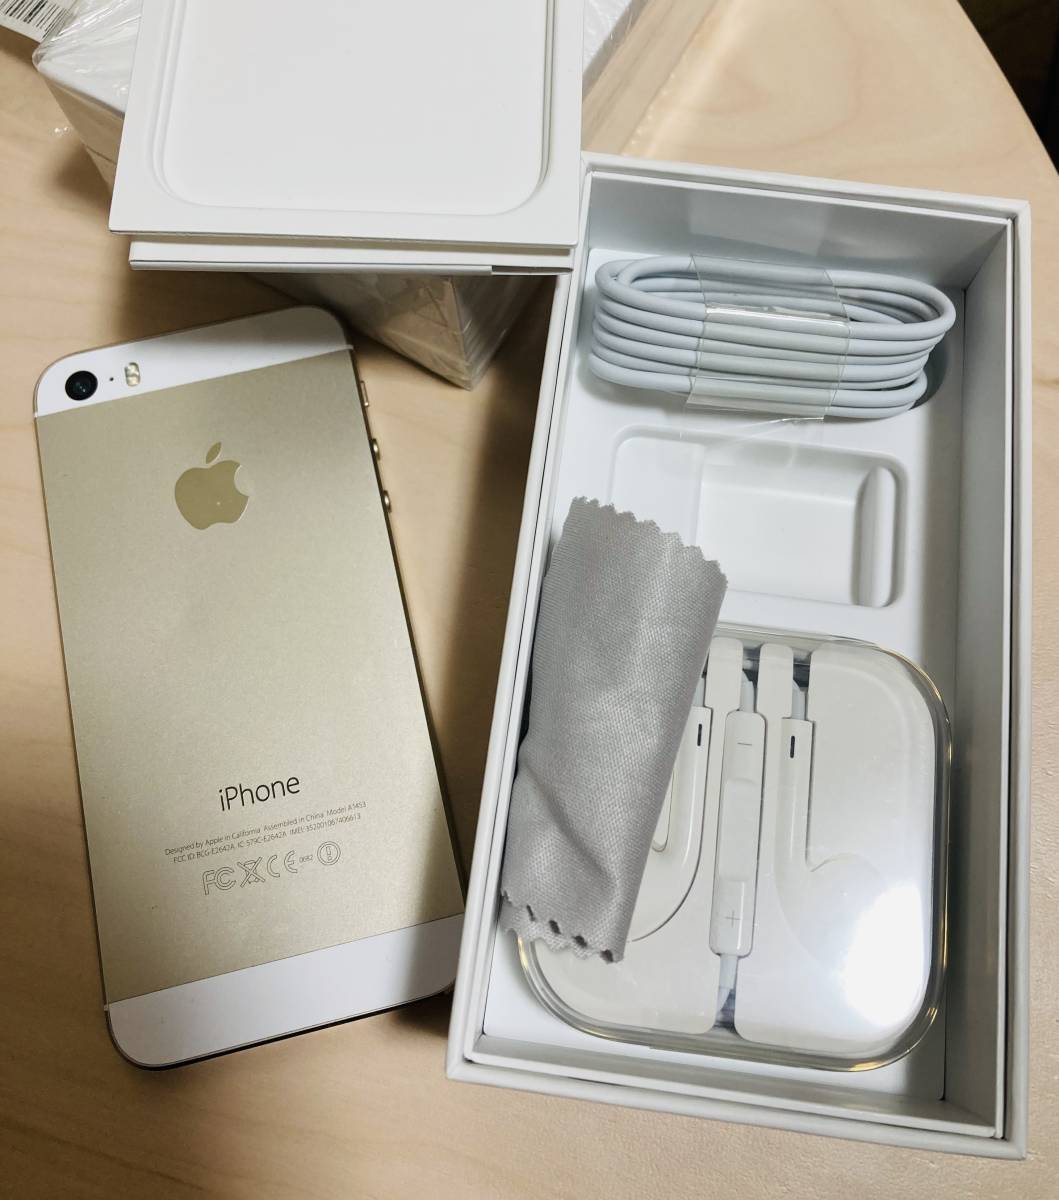 iPhone5S ゴールド 64GB アイフォン iPhone 5S 携帯端末 Apple 